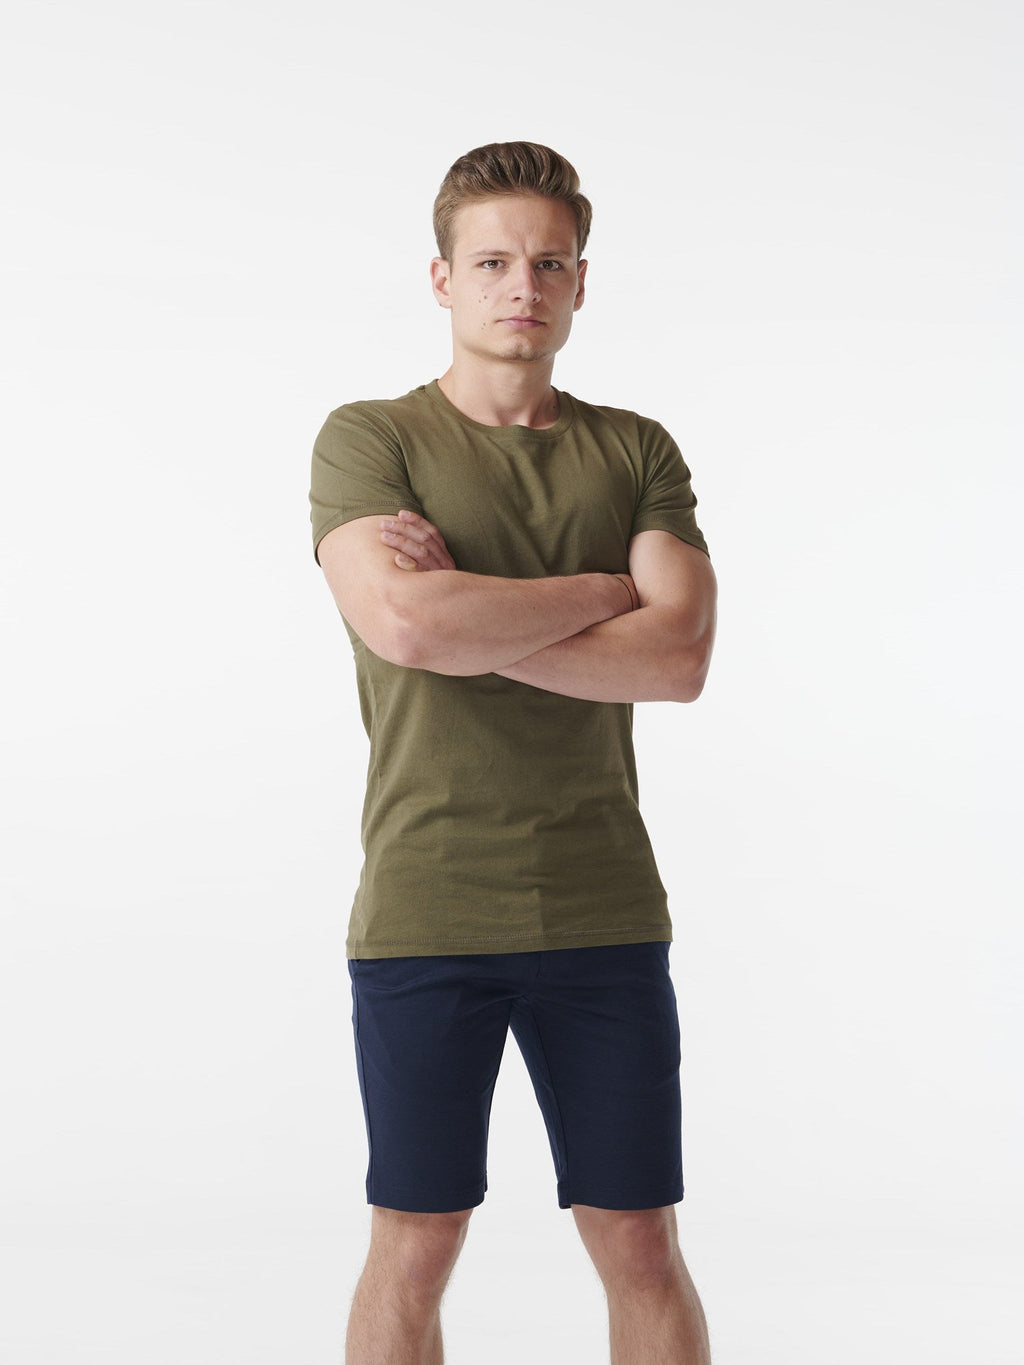 T-shirt musculaire - Green de l'armée